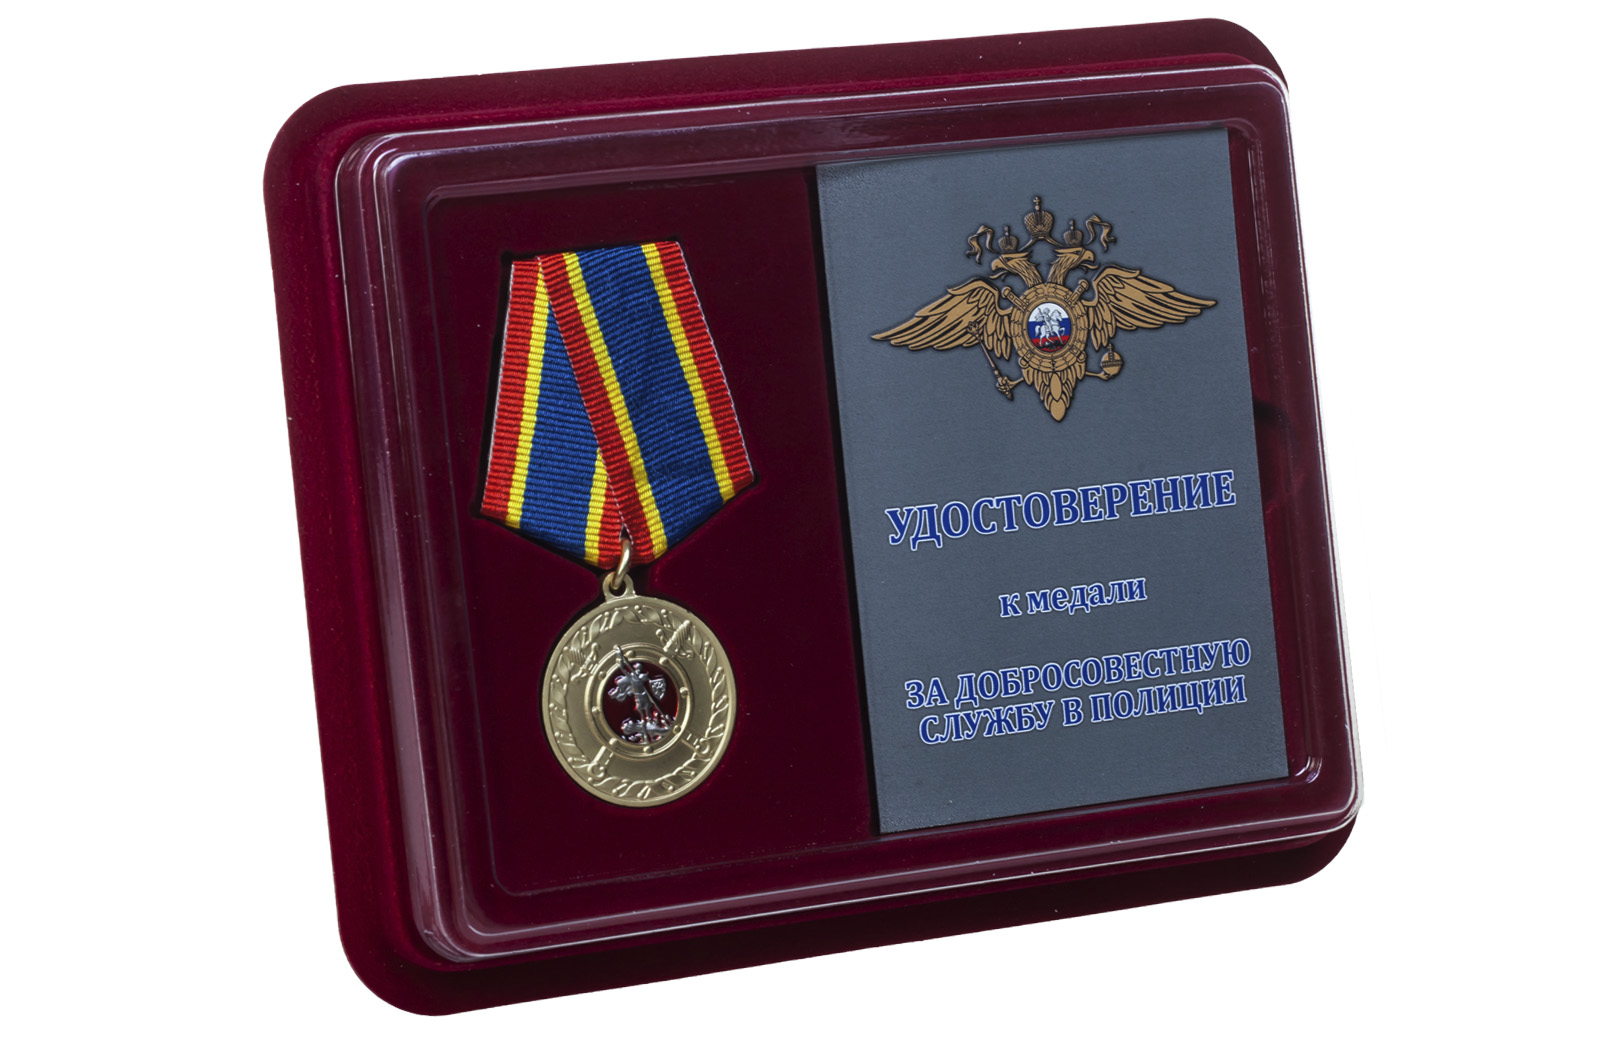 Купить медаль За добросовестную службу в полиции оптом или в розницу